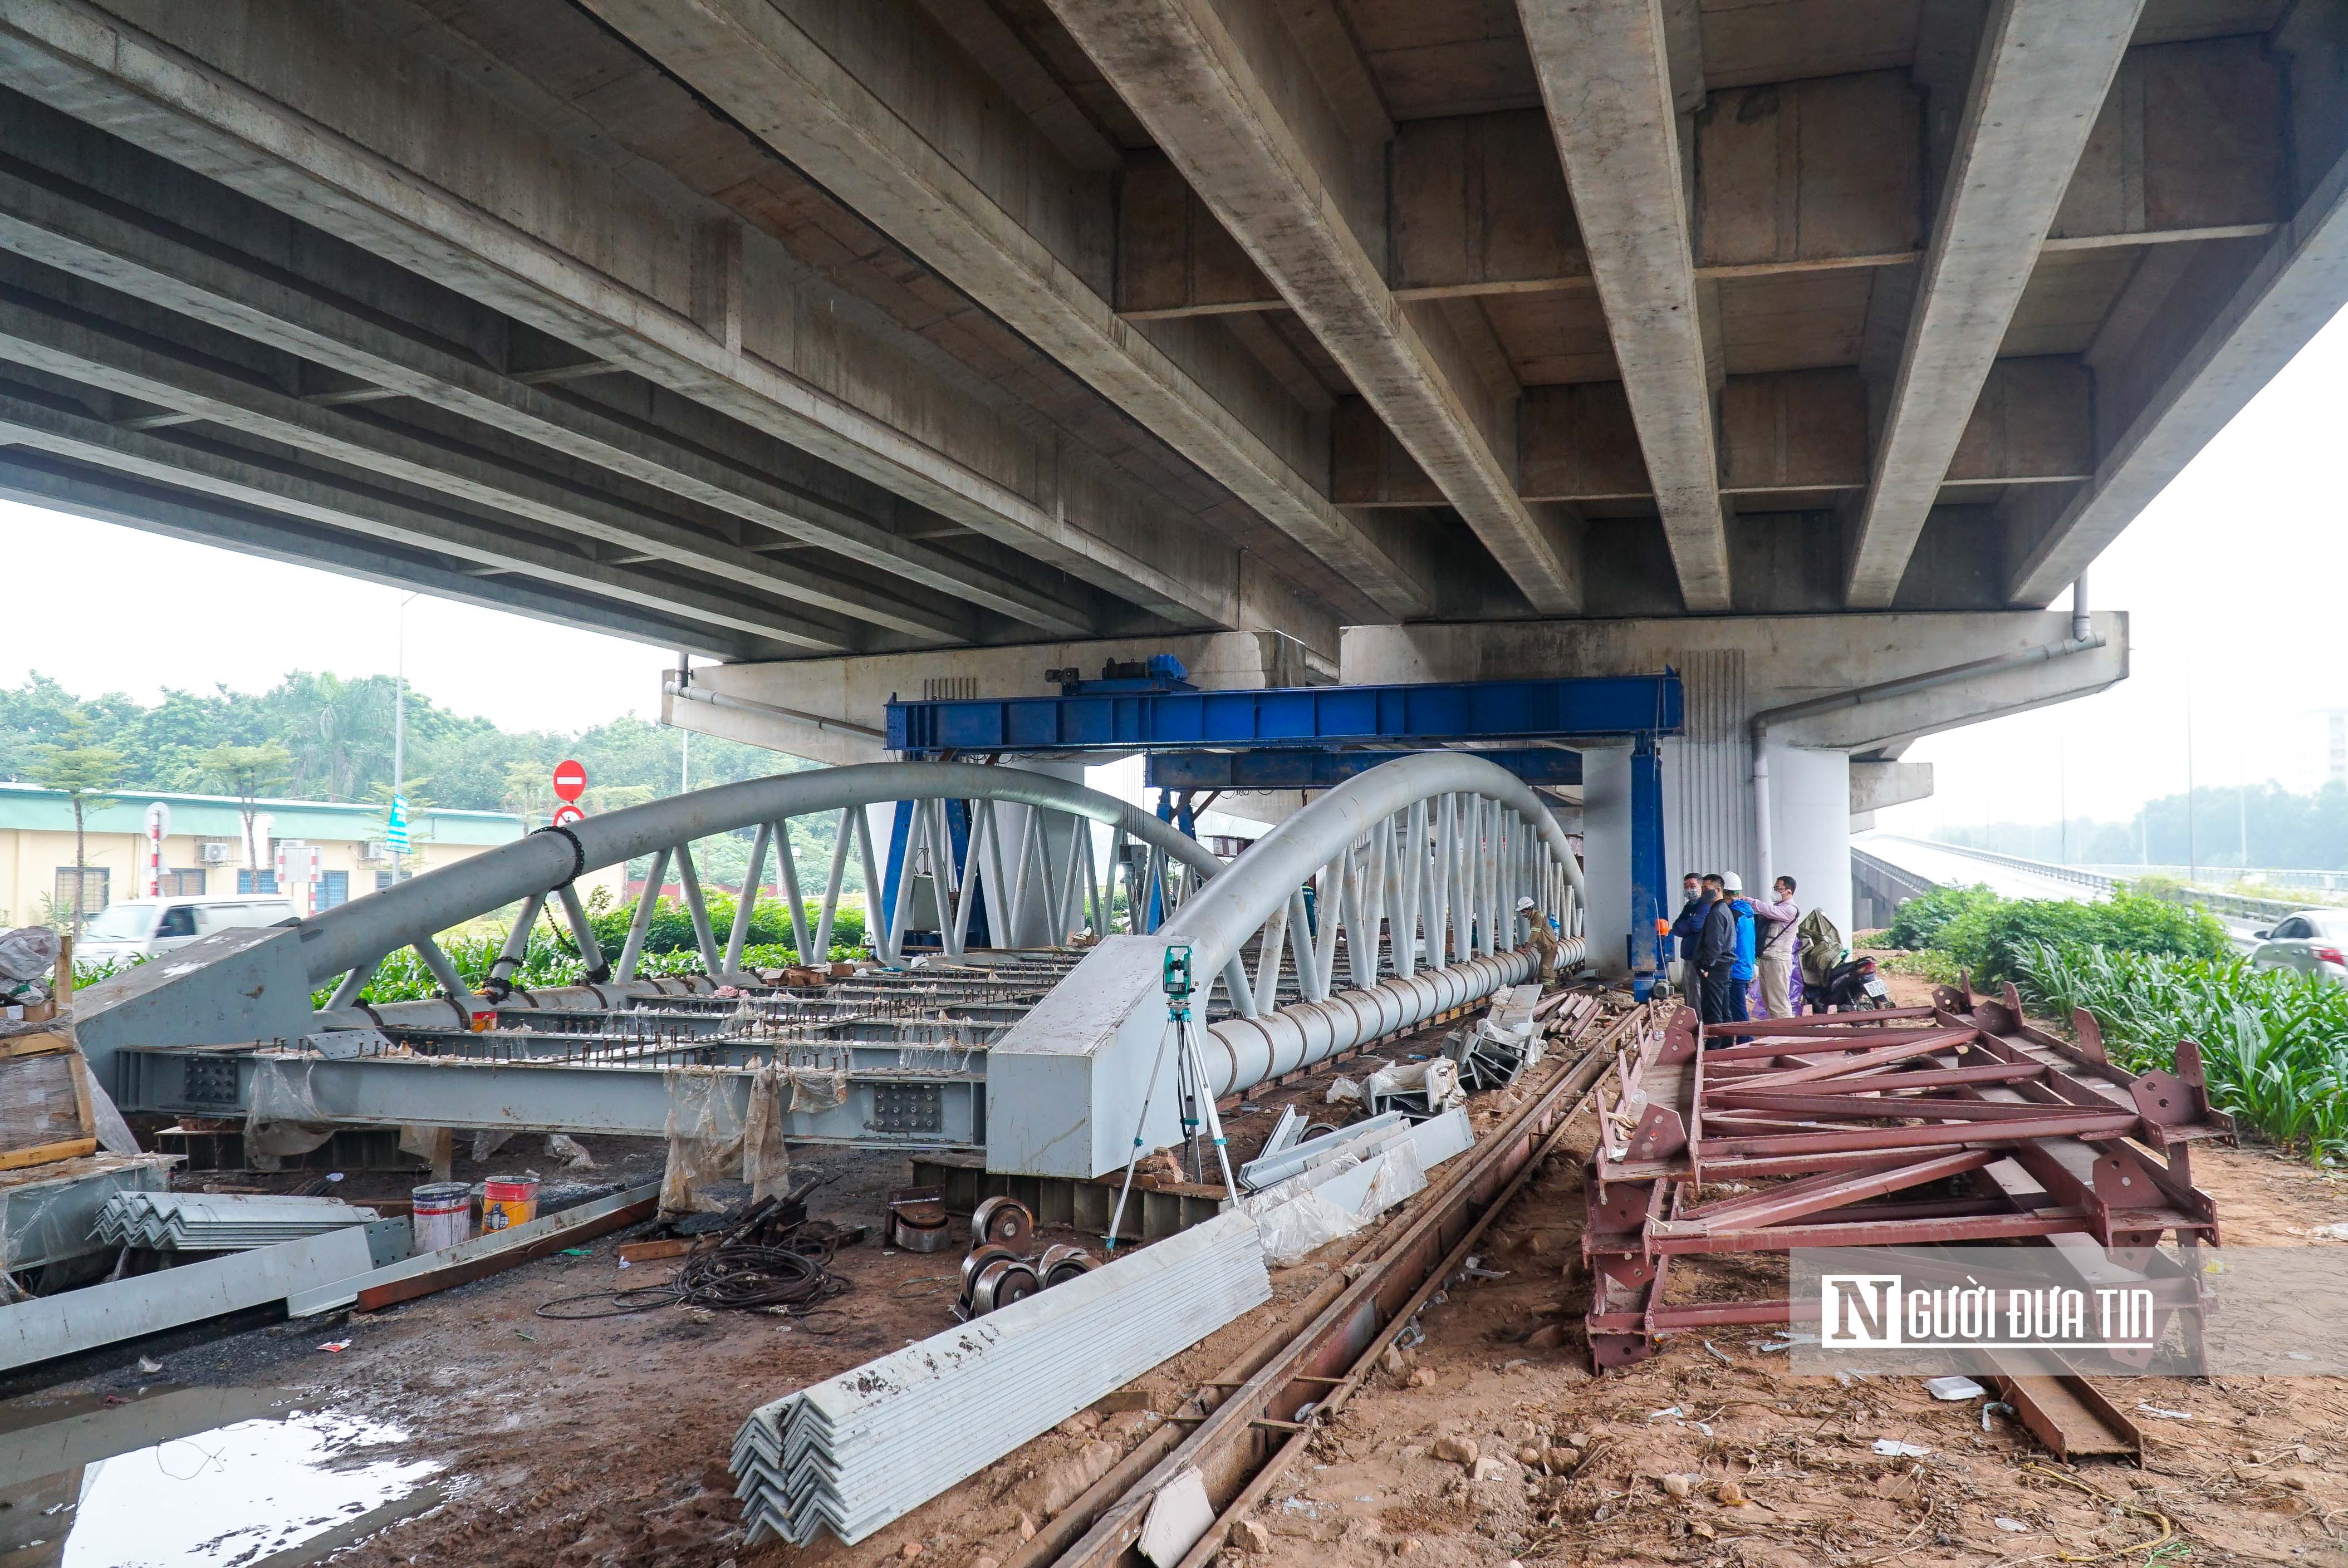 Kinh tế - Gấp rút xây dựng cầu vượt trị giá hơn 300 tỷ đồng bắc qua hồ Linh Đàm